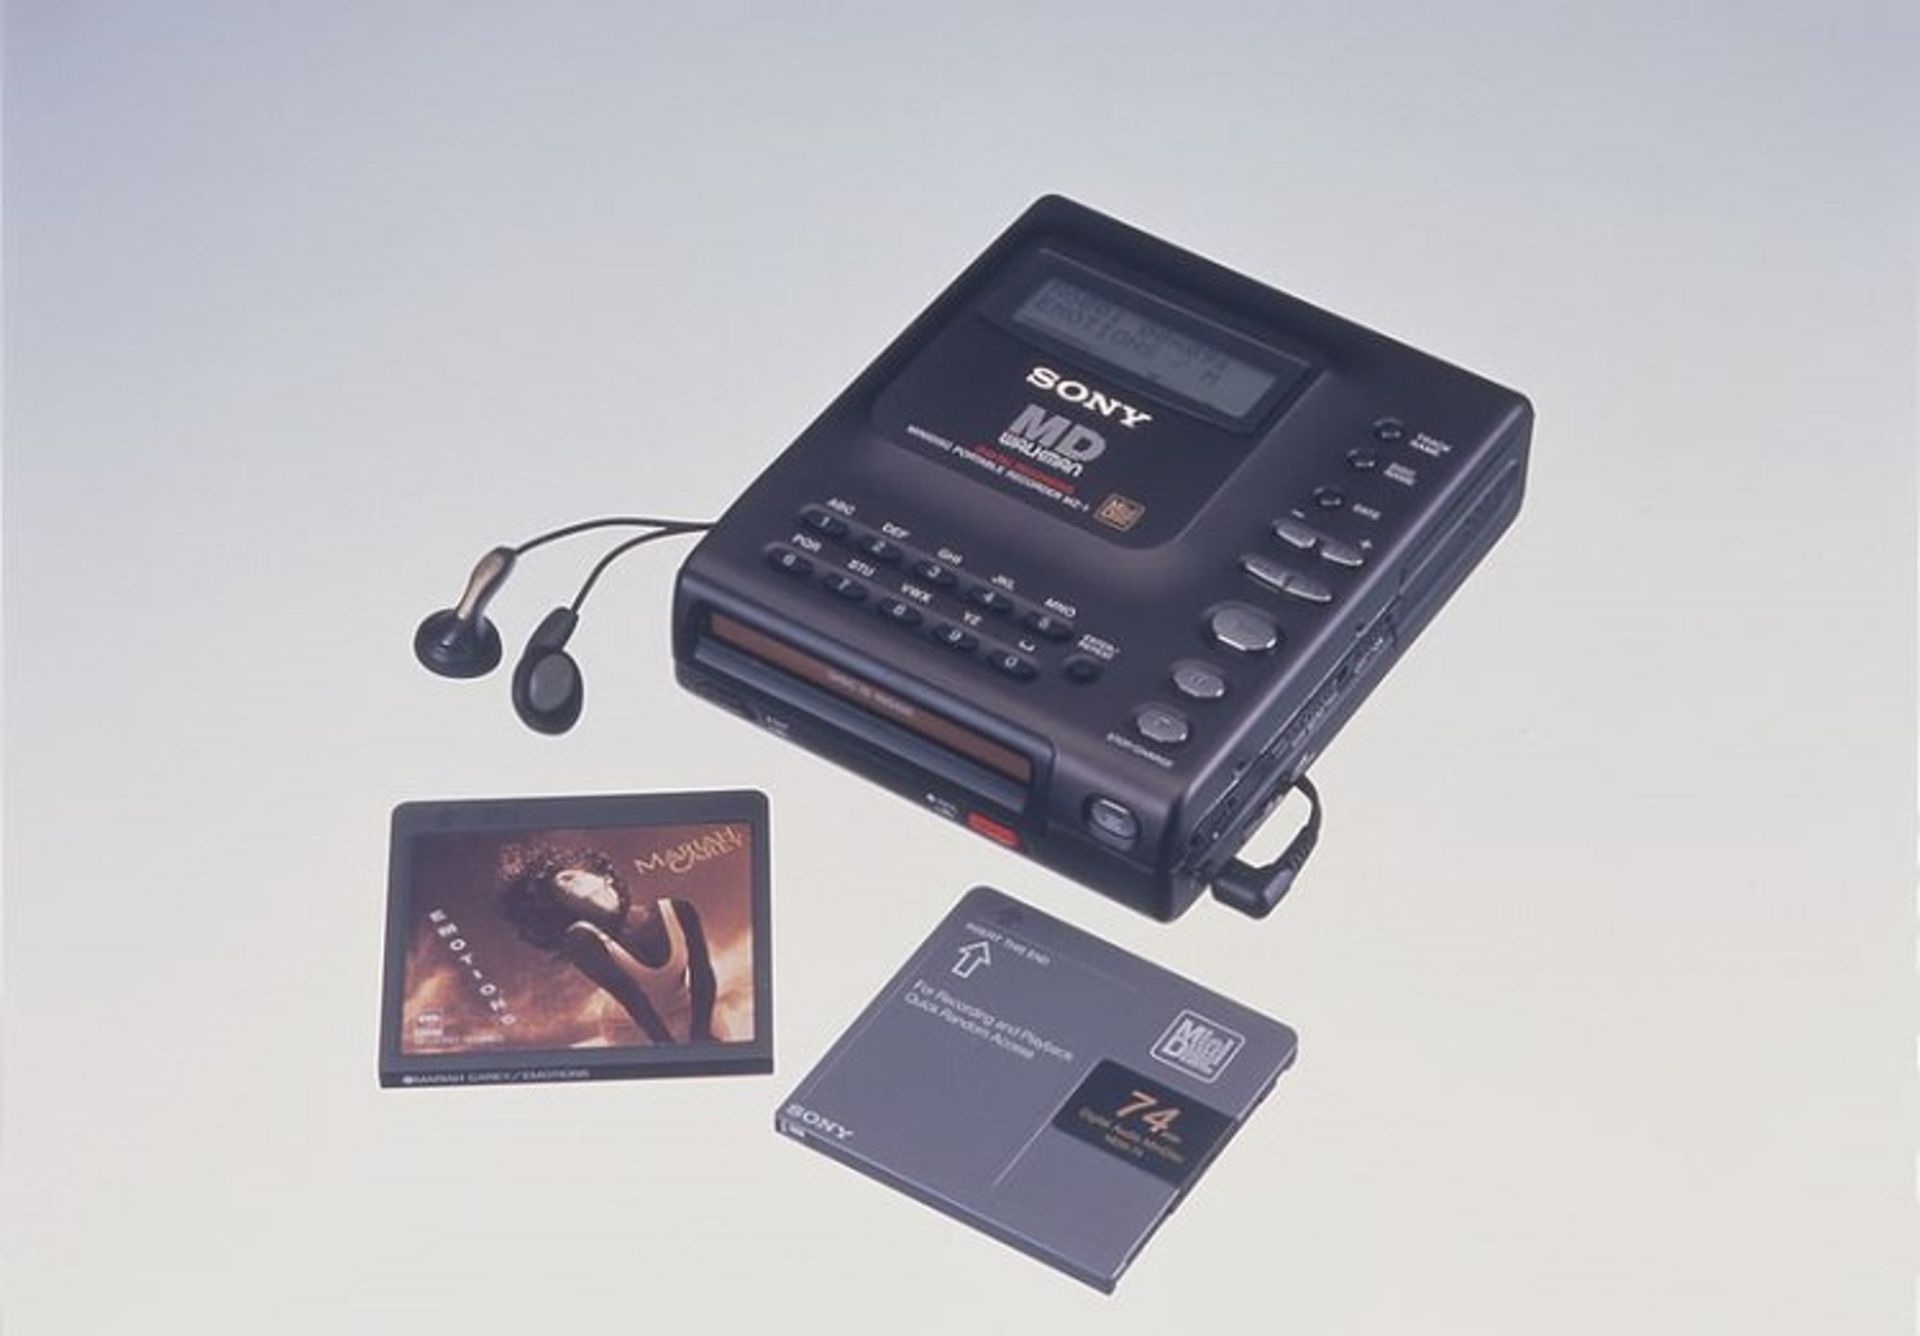 1992 - Sony Walkman MZ-1